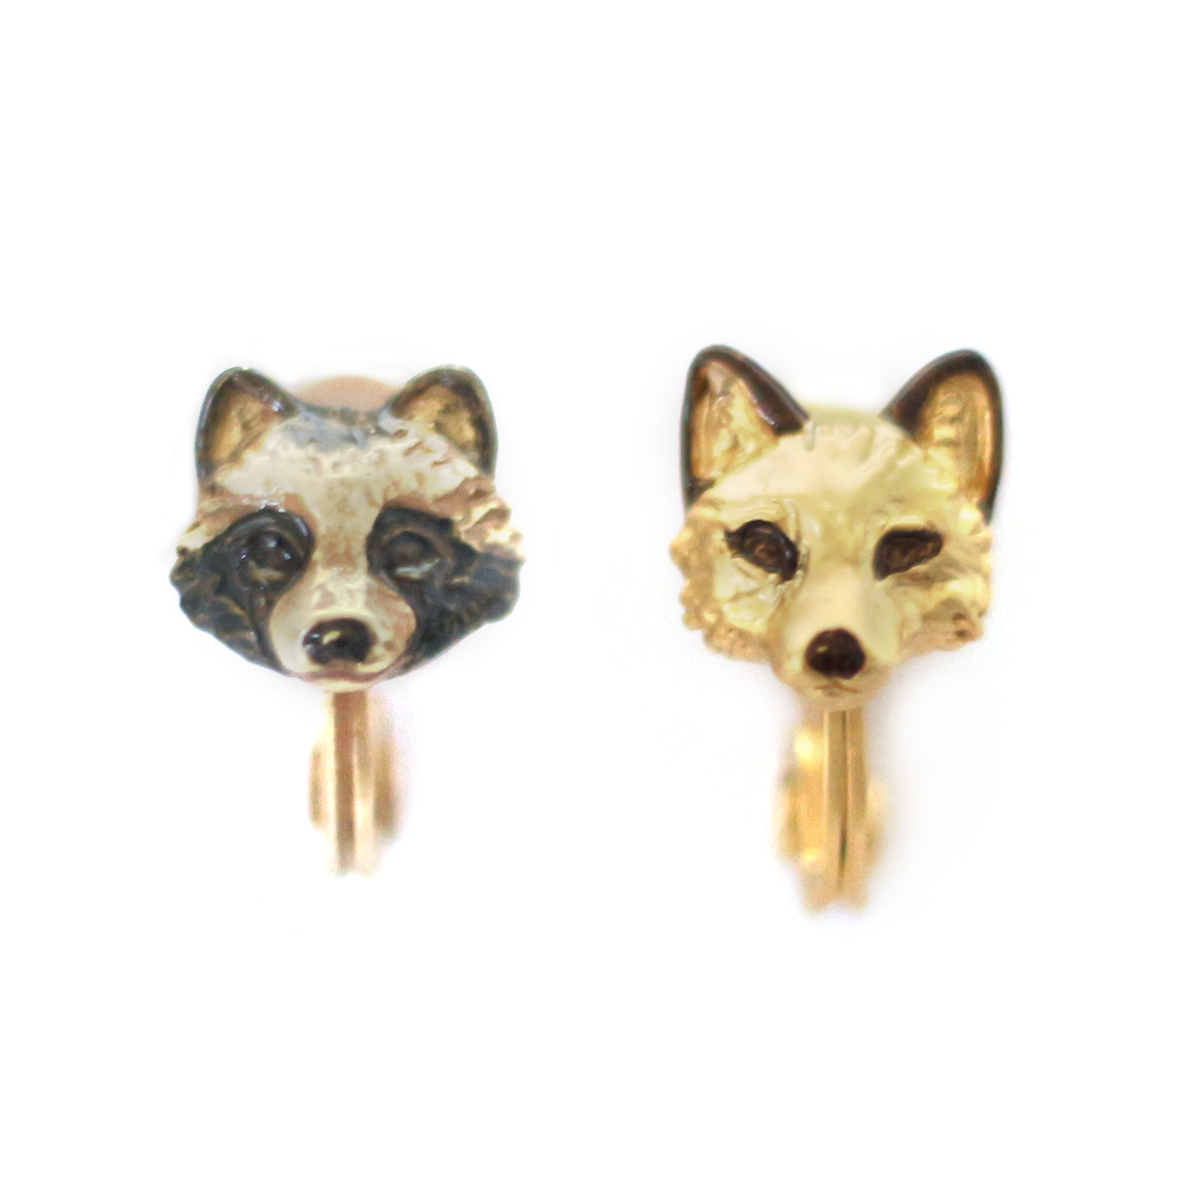 たぬきつイヤリング / Racoon Dog and Fox